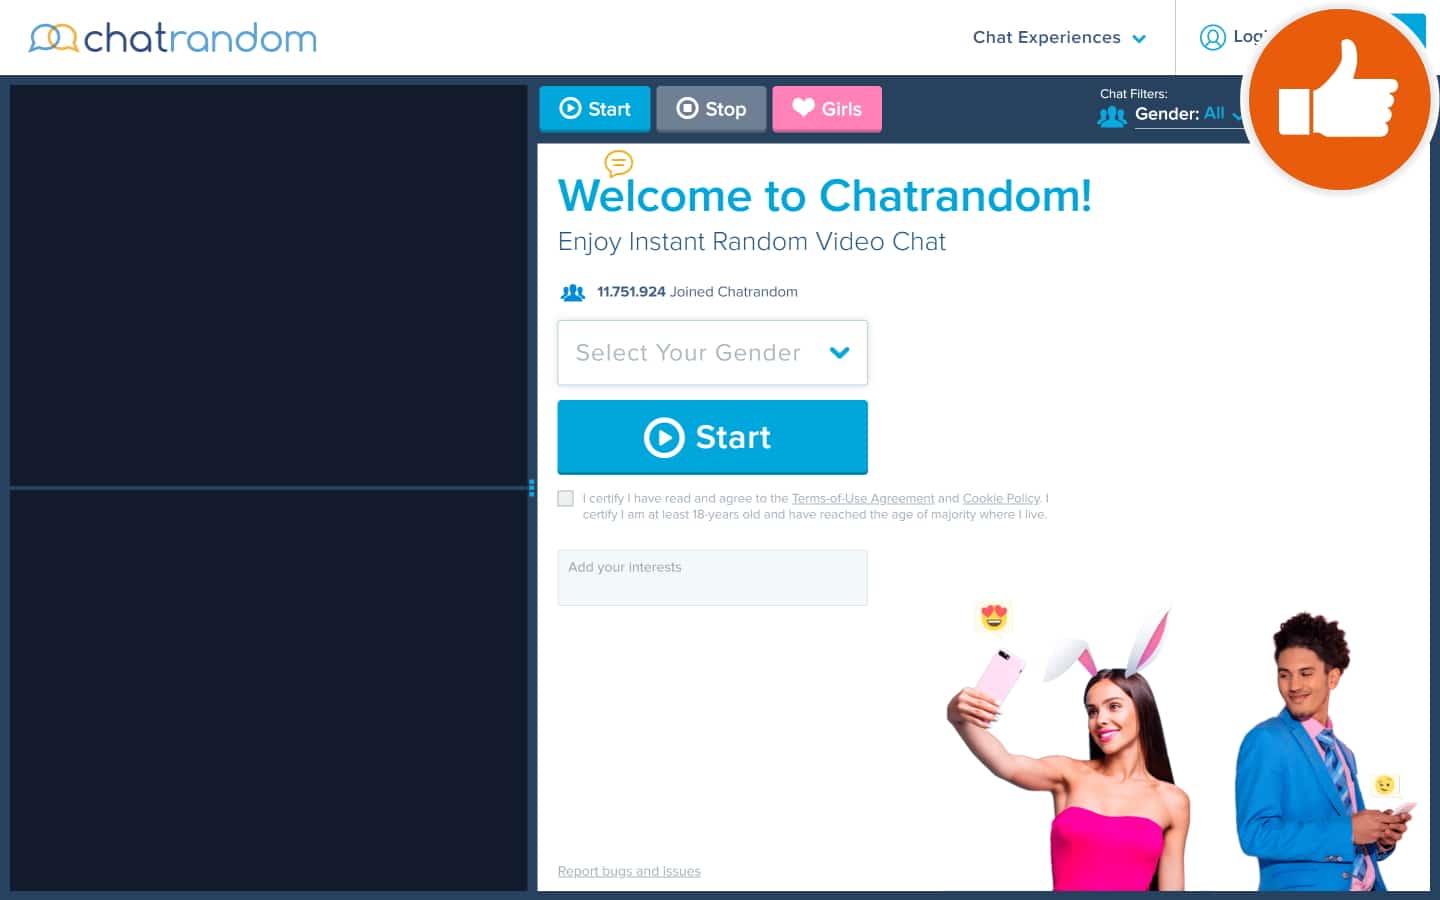 Review ChatRandom.com scam experience